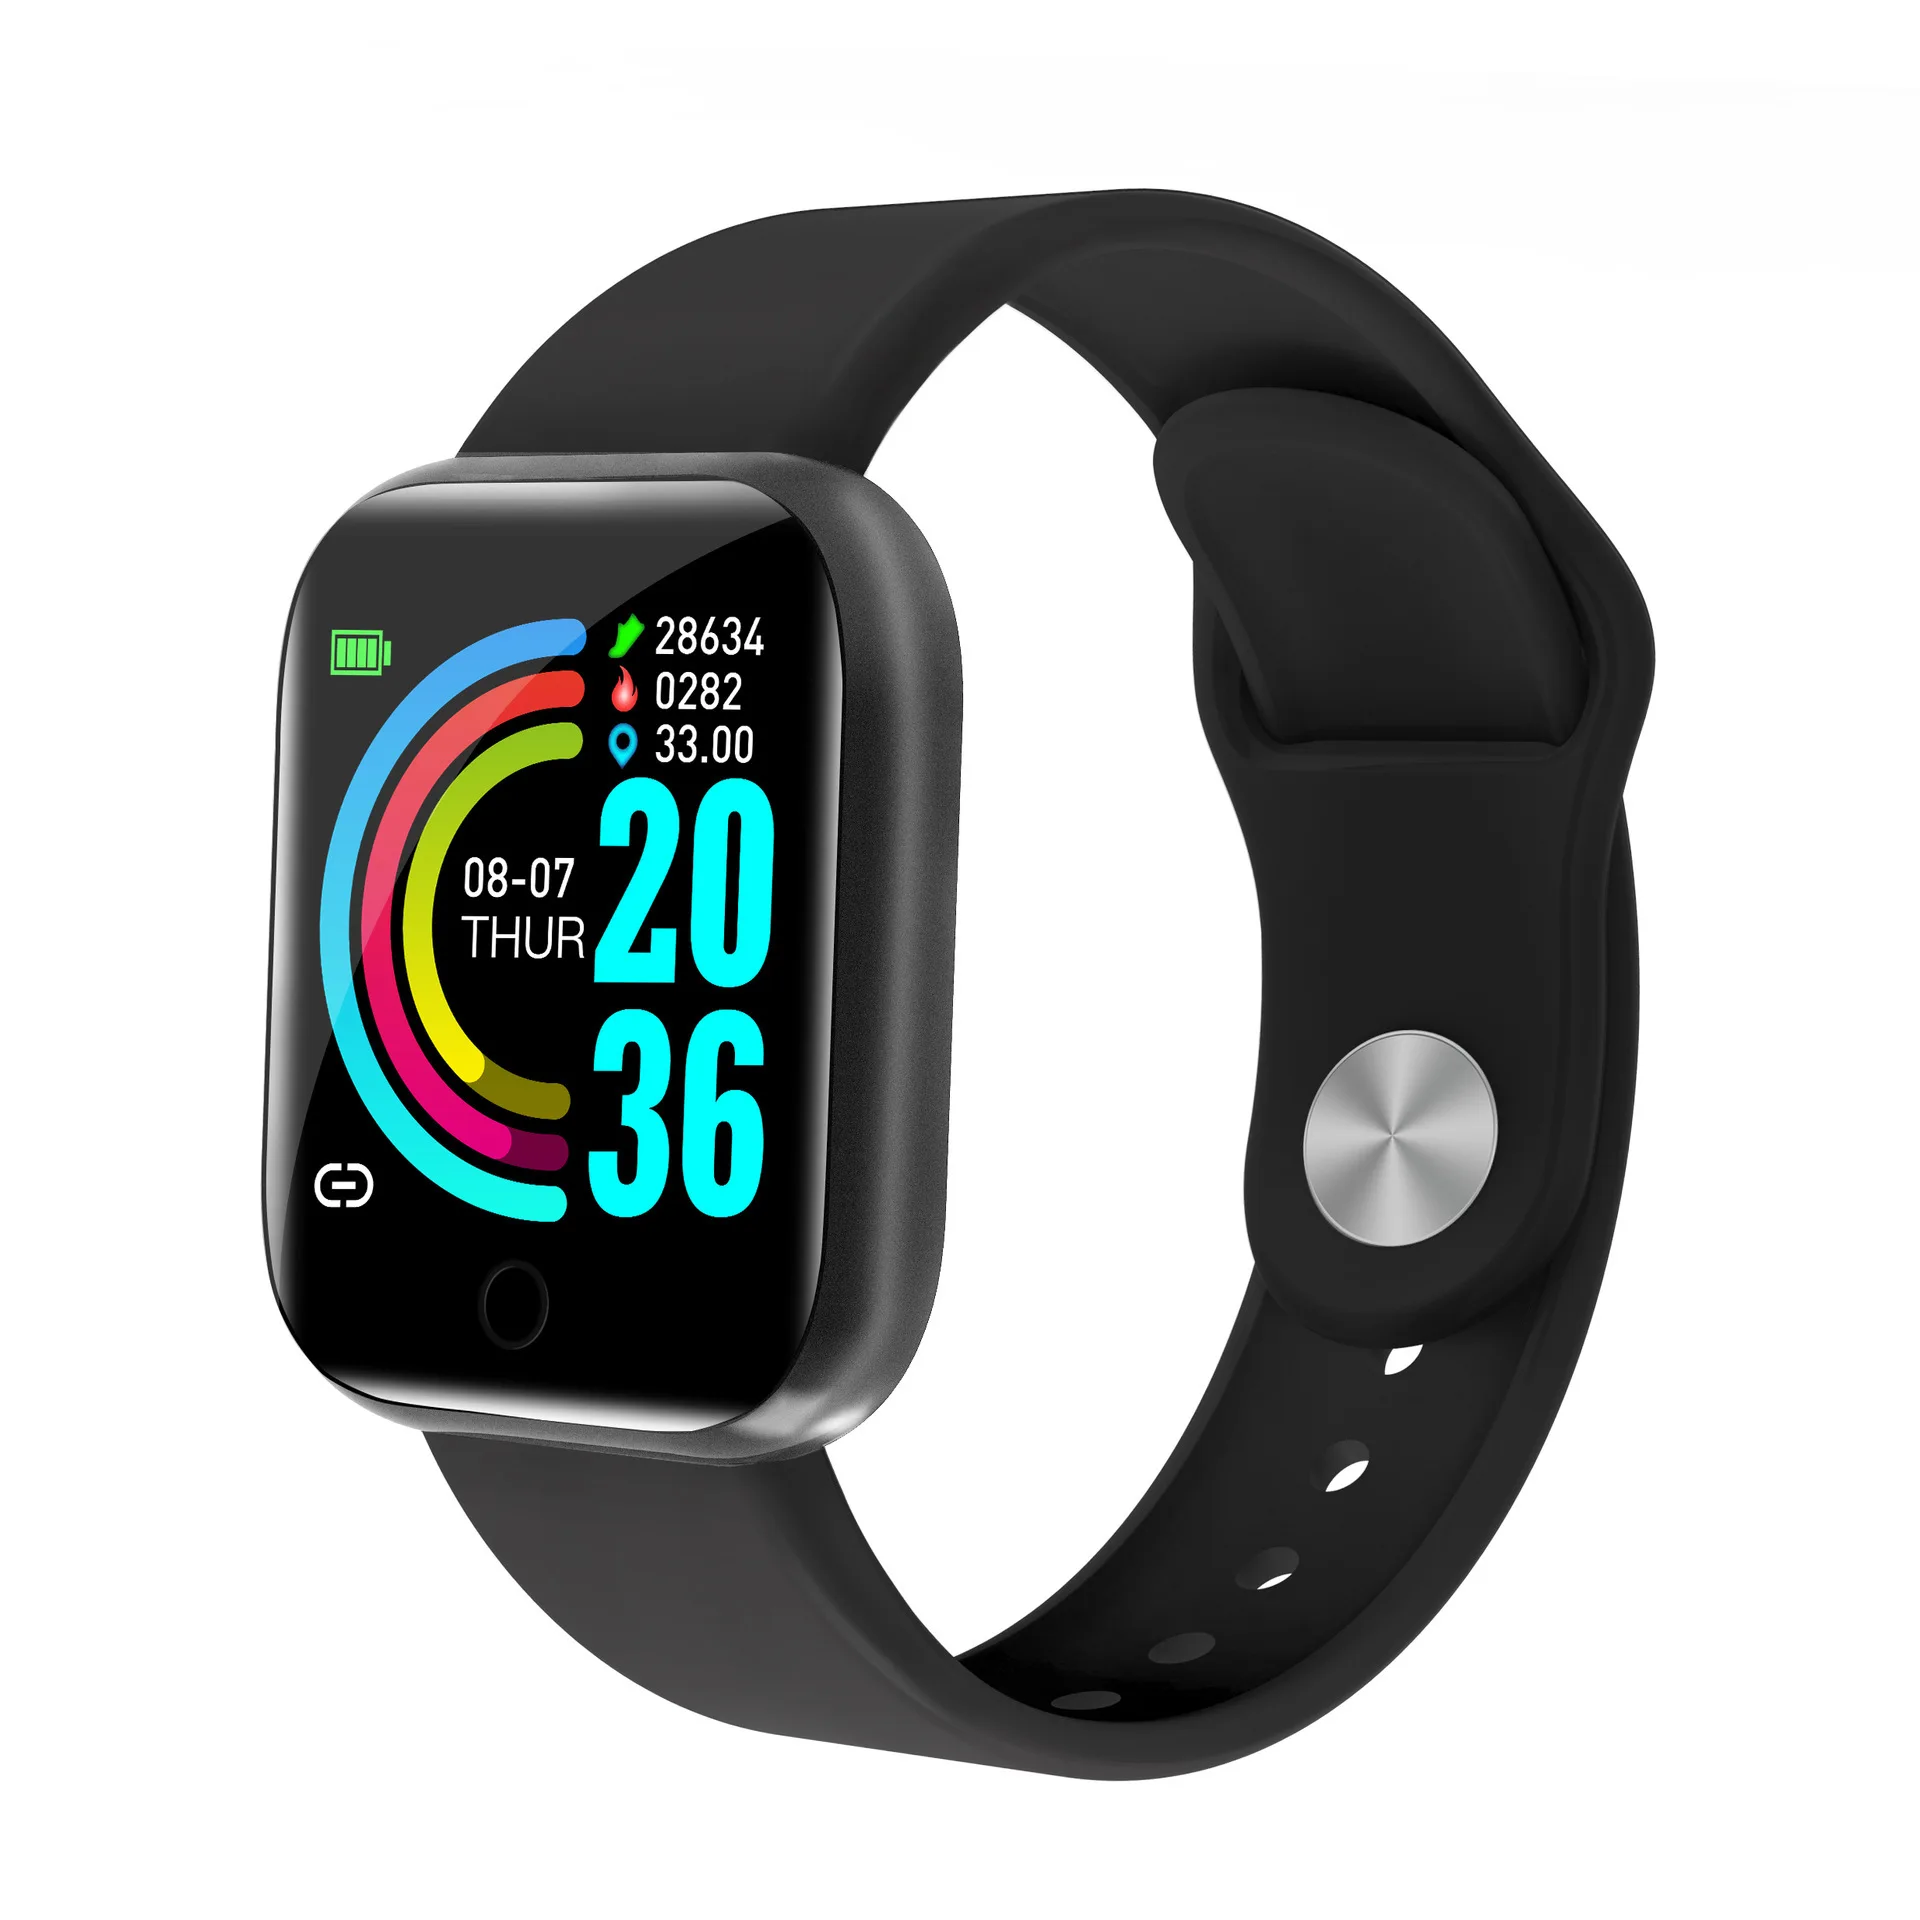 

2021 Neue Damen Sport Armband Smart Uhr Frauen Smartwatch Männer Smartband Android IOS Wasserdichte Fitness Tracker Smart Uhr